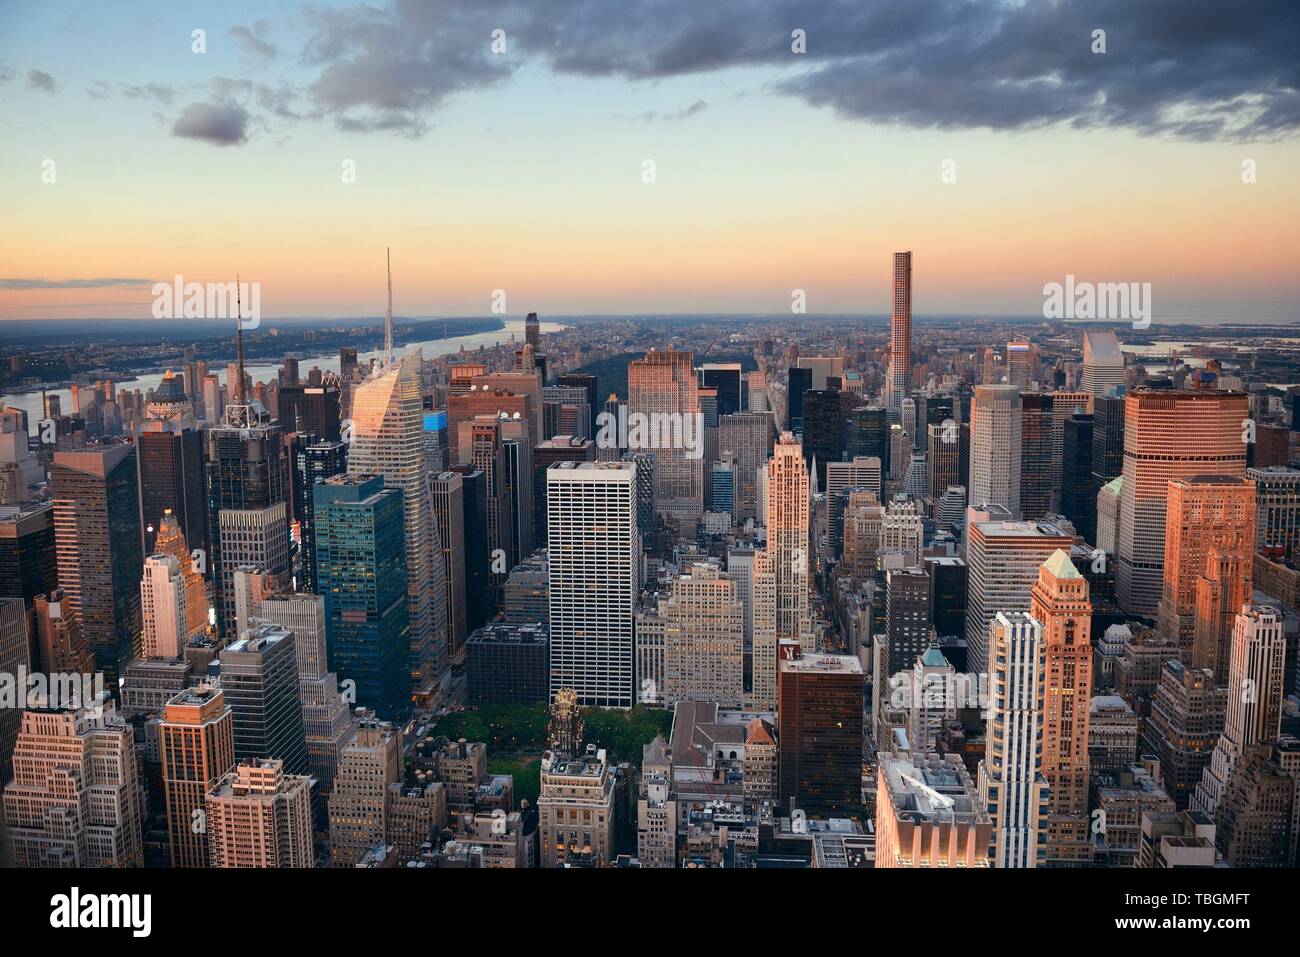 La Ciudad de Nueva York Midtown skyline al atardecer con rascacielos y el paisaje urbano. Foto de stock